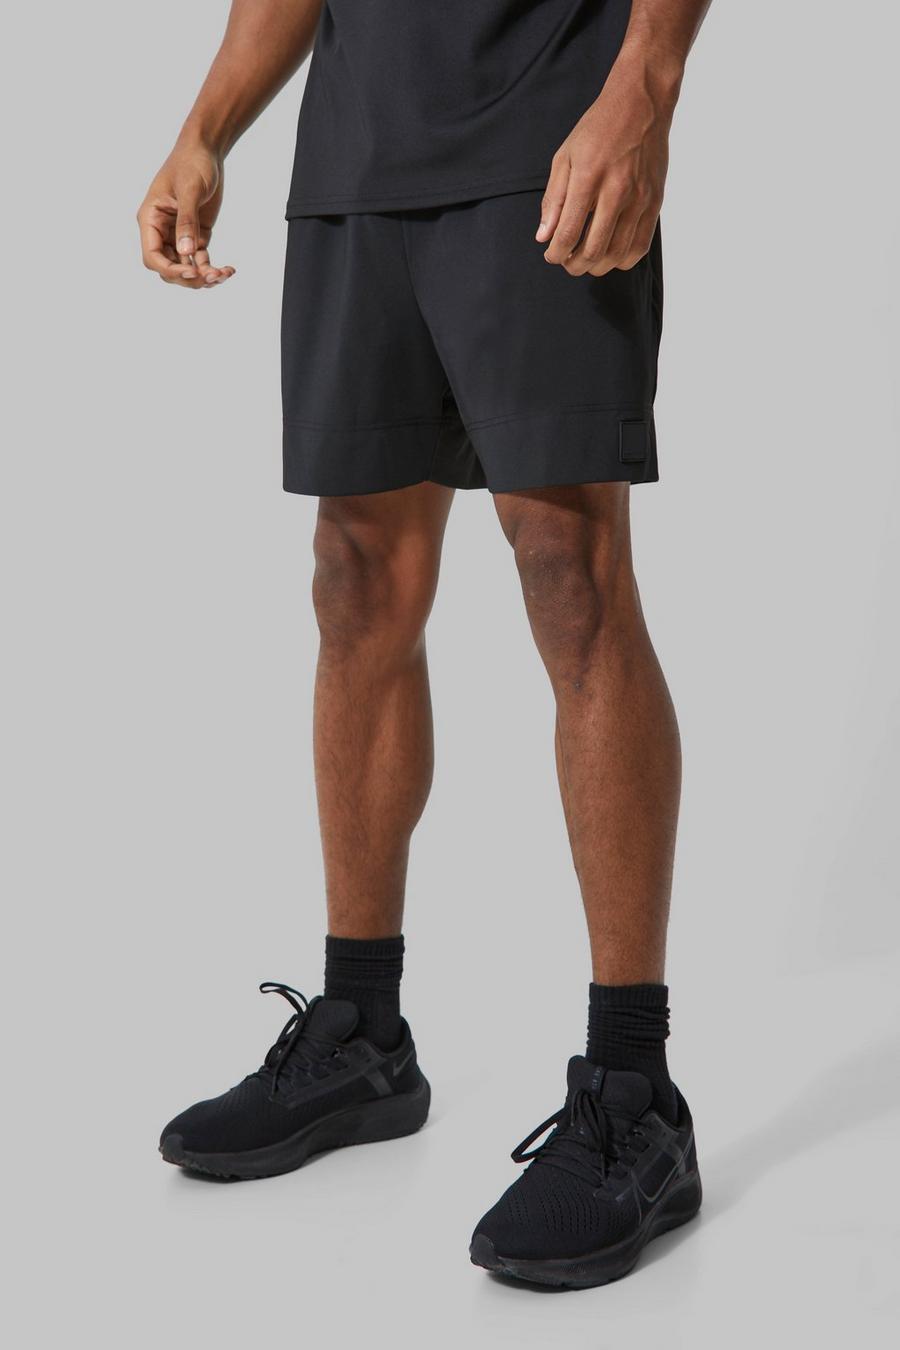 Pantalón corto MAN Active ajustado al músculo, Black